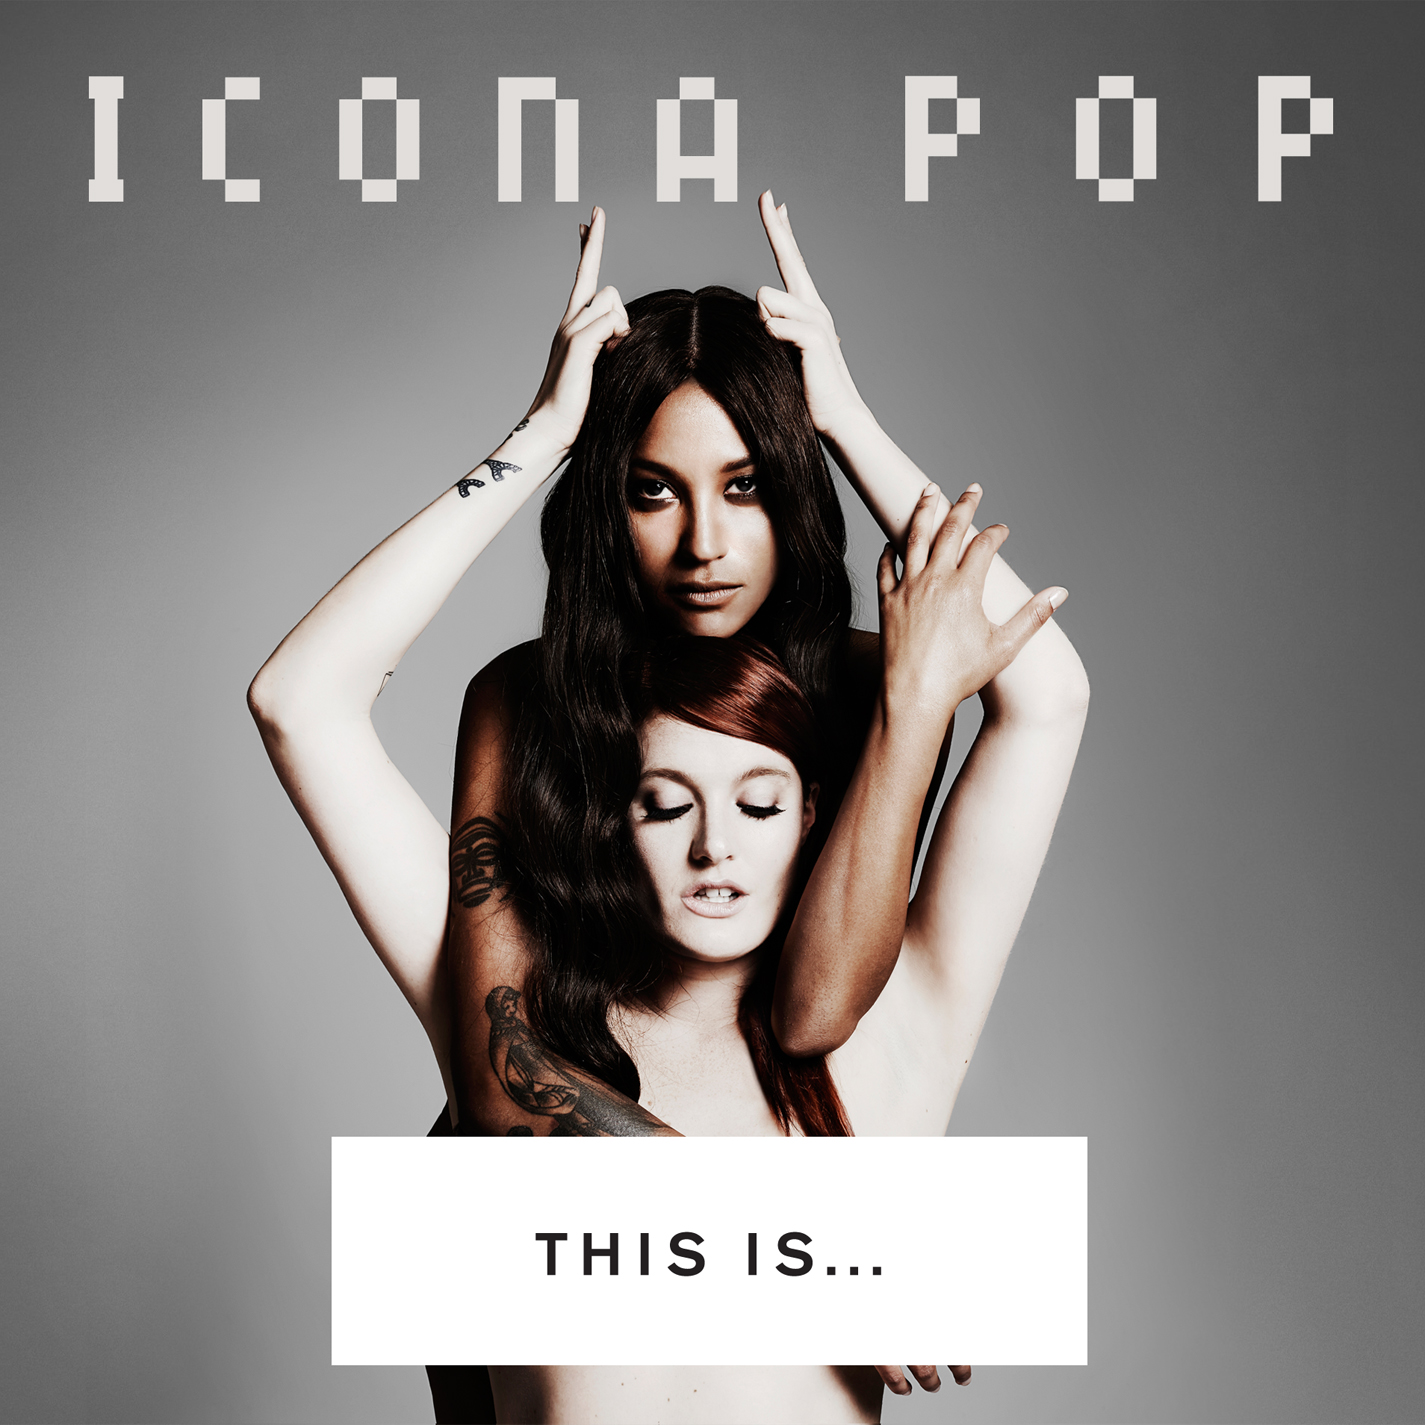 Icona Pop - “This Is … Icona Pop“